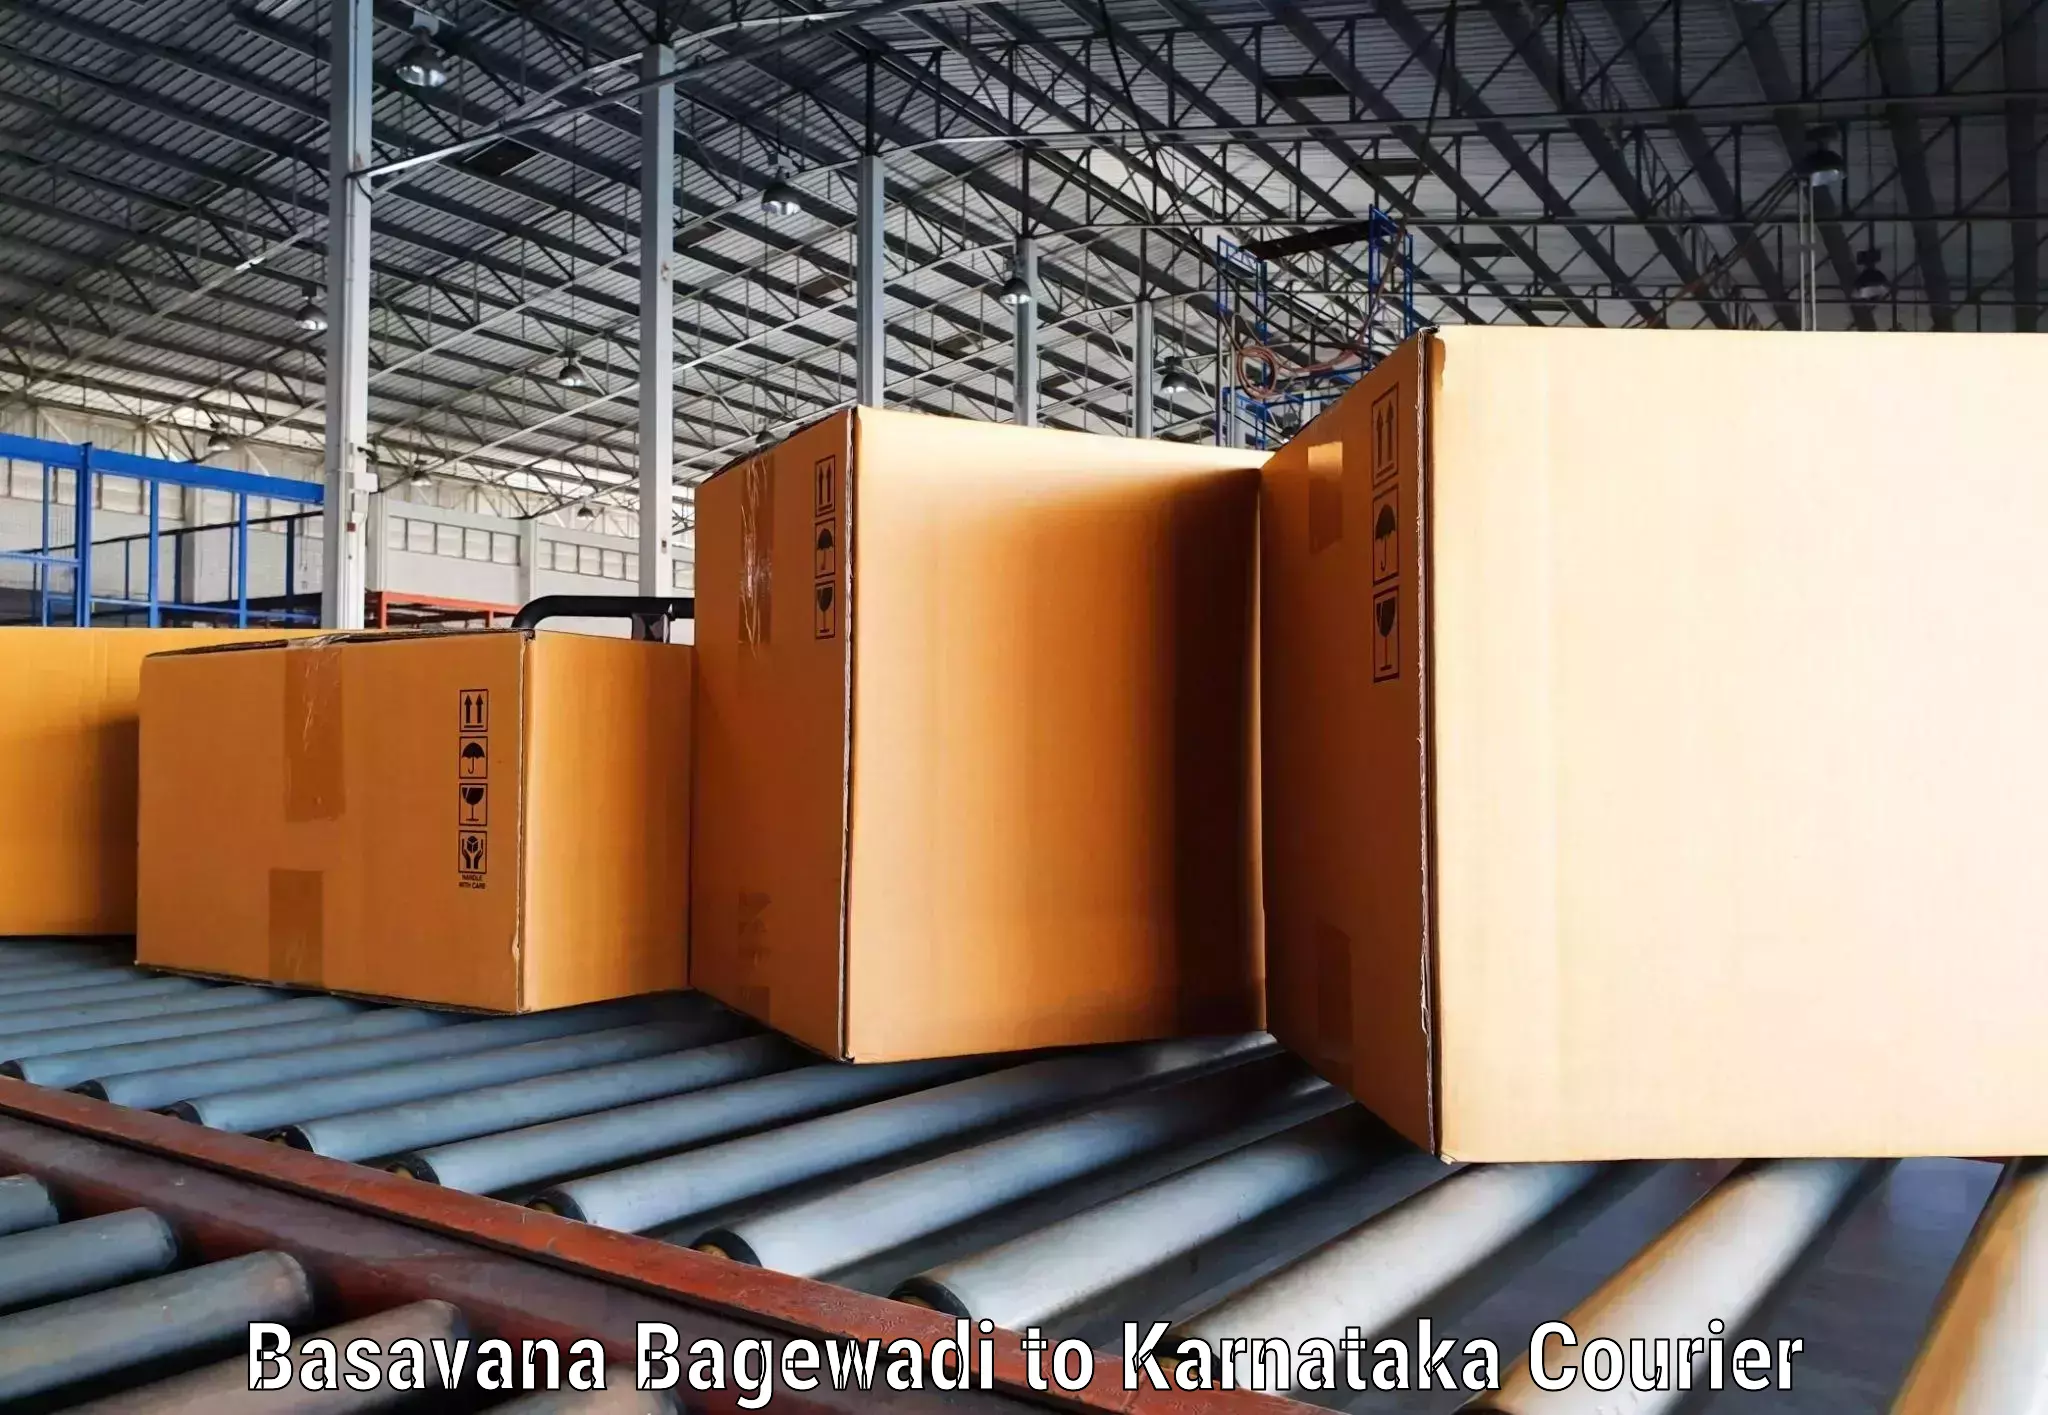 Courier service booking Basavana Bagewadi to Karnataka